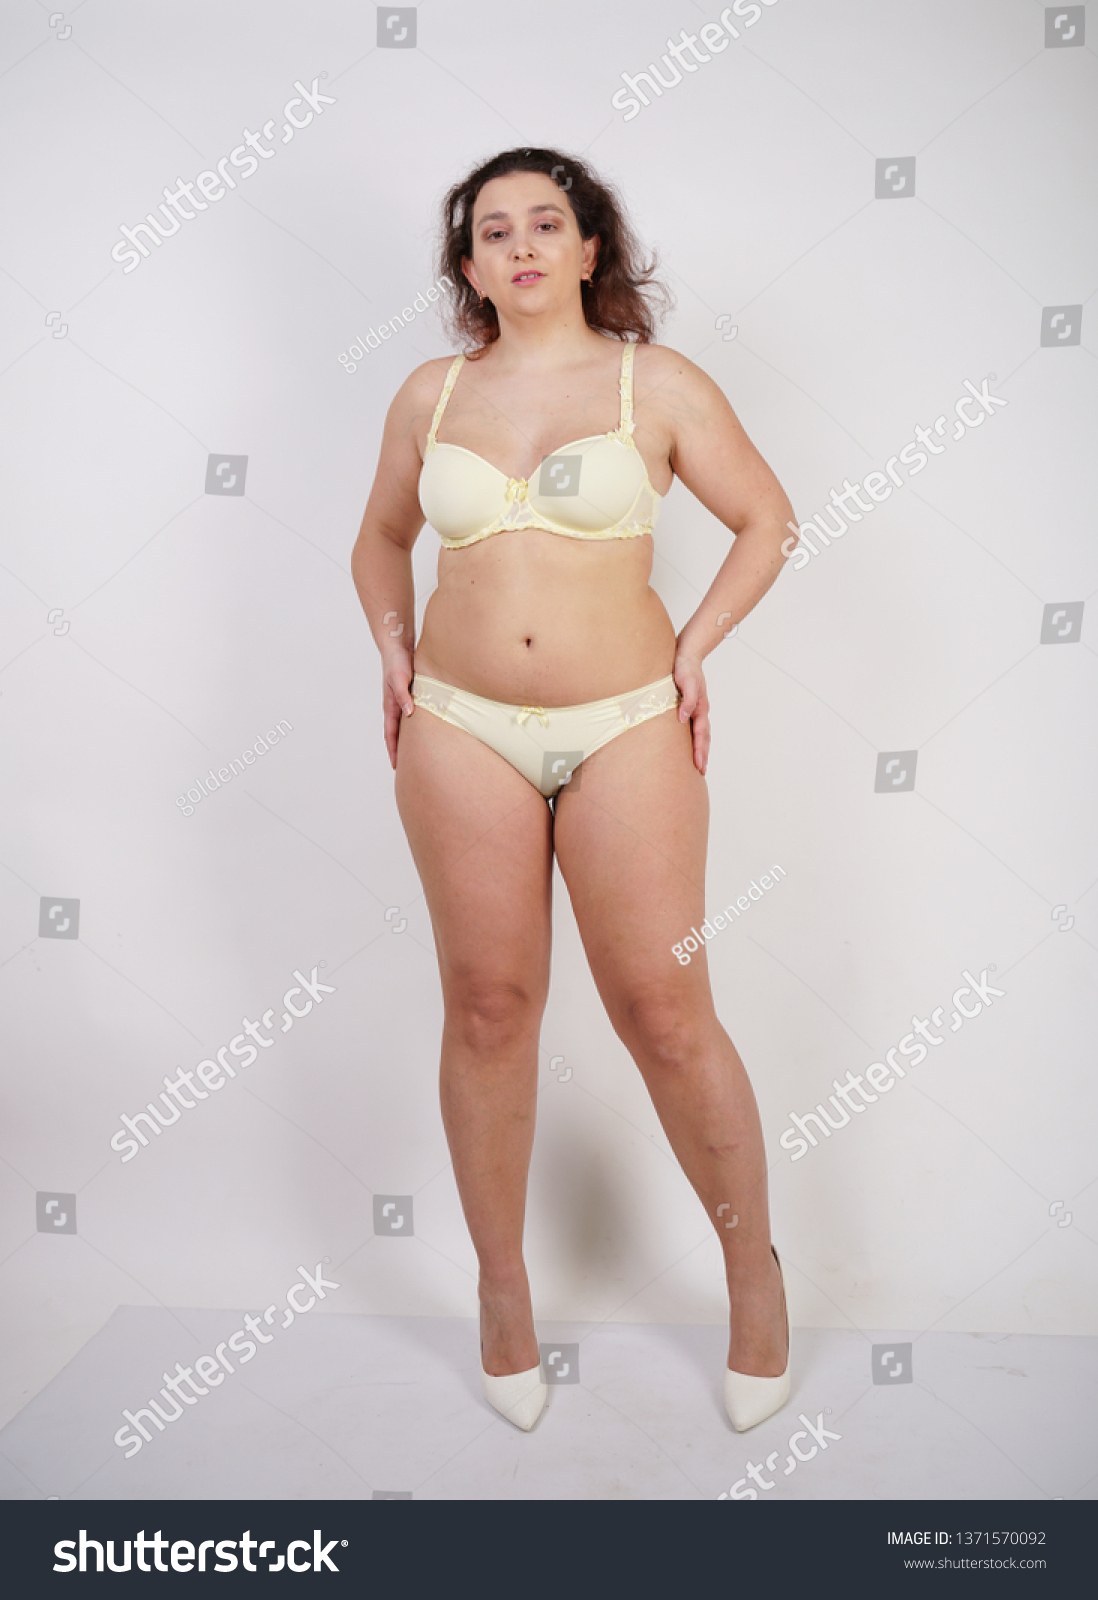 chubby girl in lingerie